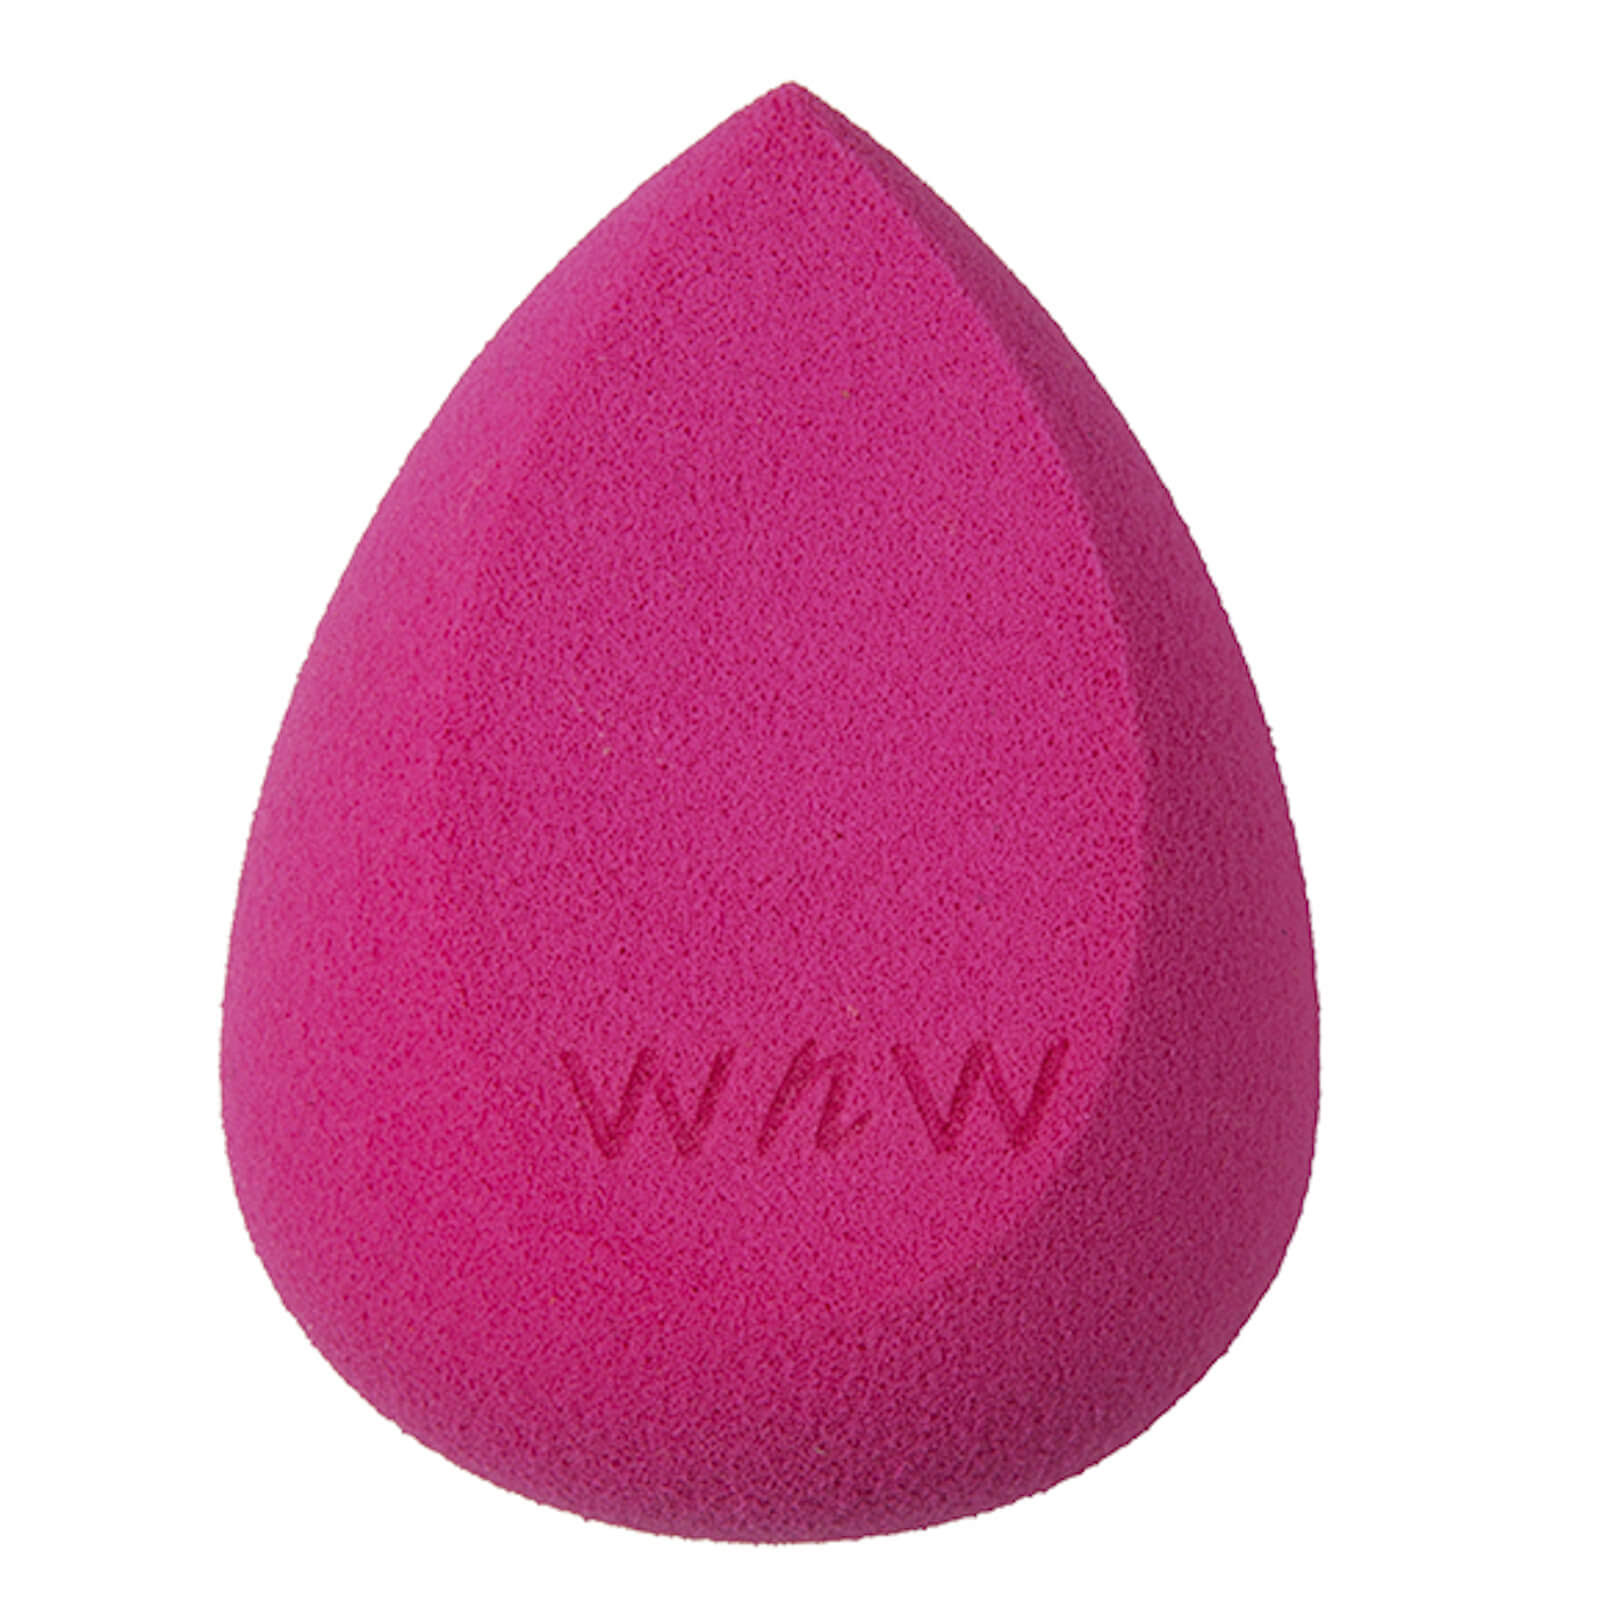 Wet N Wild Makeup Sponge Applicator - Pink